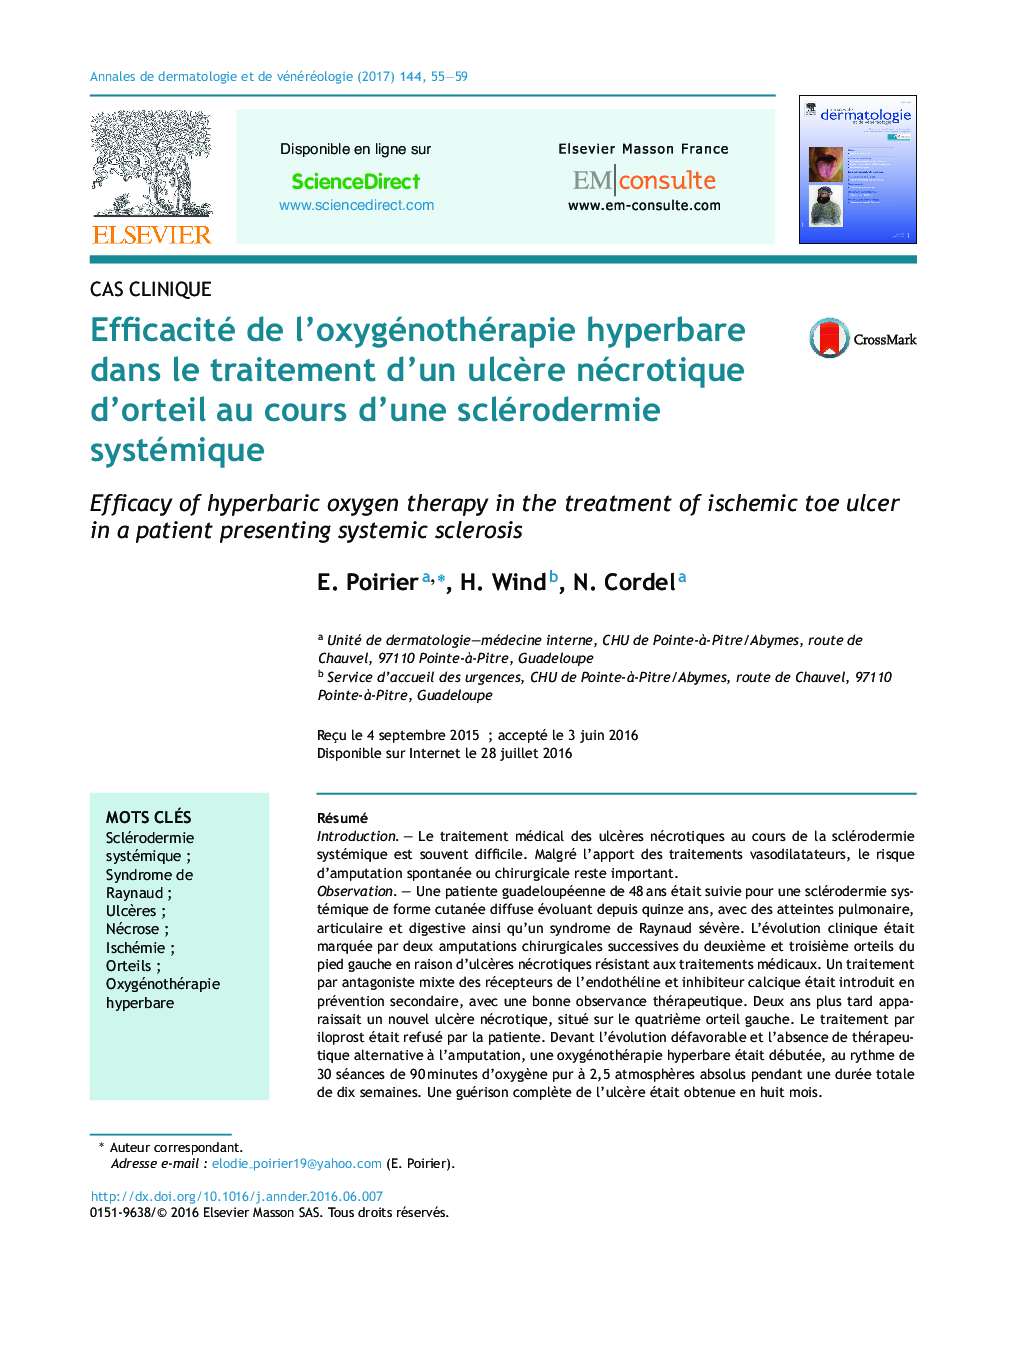 Efficacité de l'oxygénothérapie hyperbare dans le traitement d'un ulcÃ¨re nécrotique d'orteil au cours d'une sclérodermie systémique